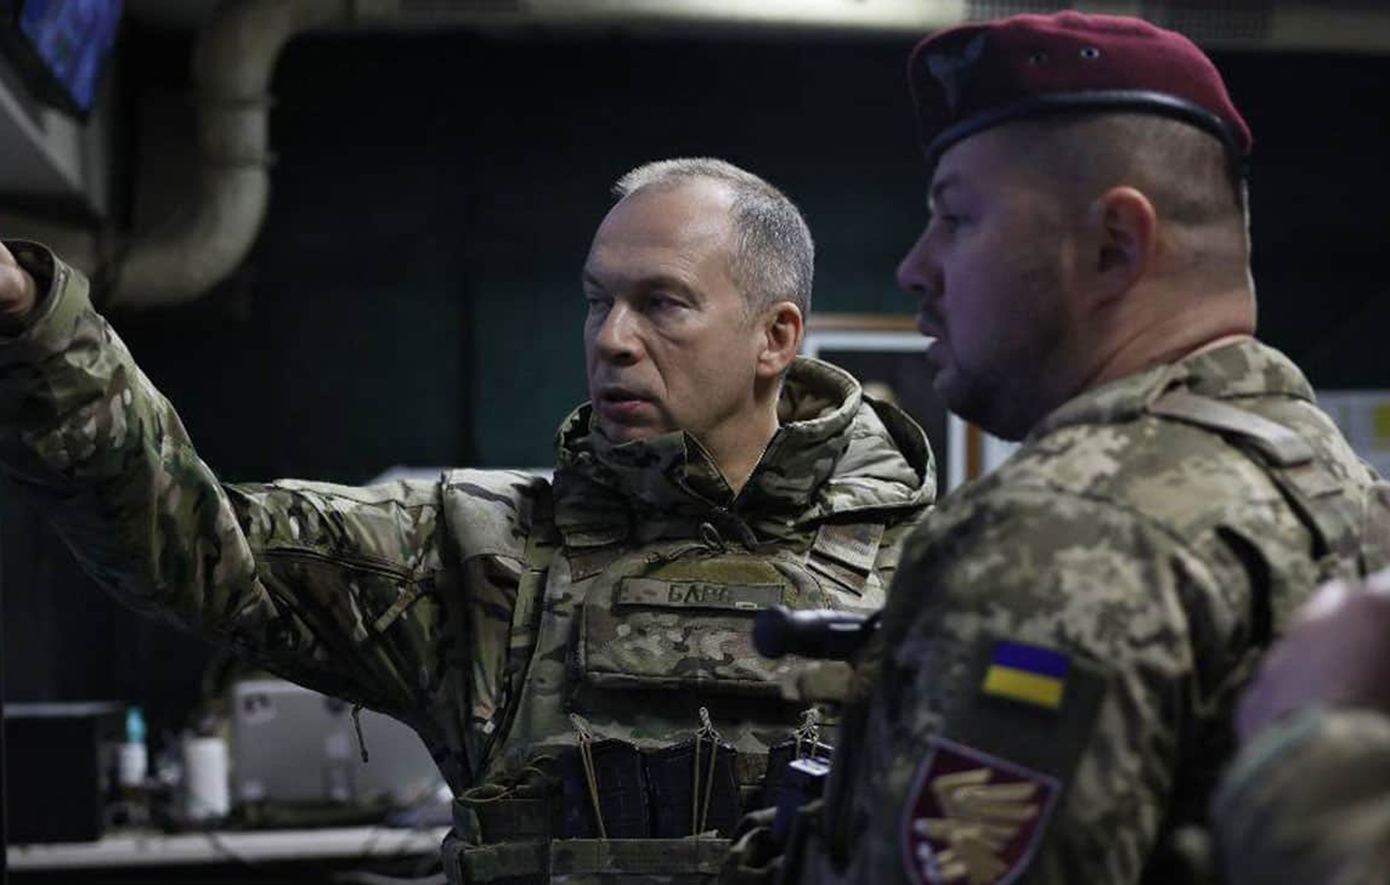 Η κατάσταση στην πρώτη γραμμή του πολέμου έχει επιδεινωθεί, δήλωσε ο αρχηγός του στρατού της Ουκρανίας